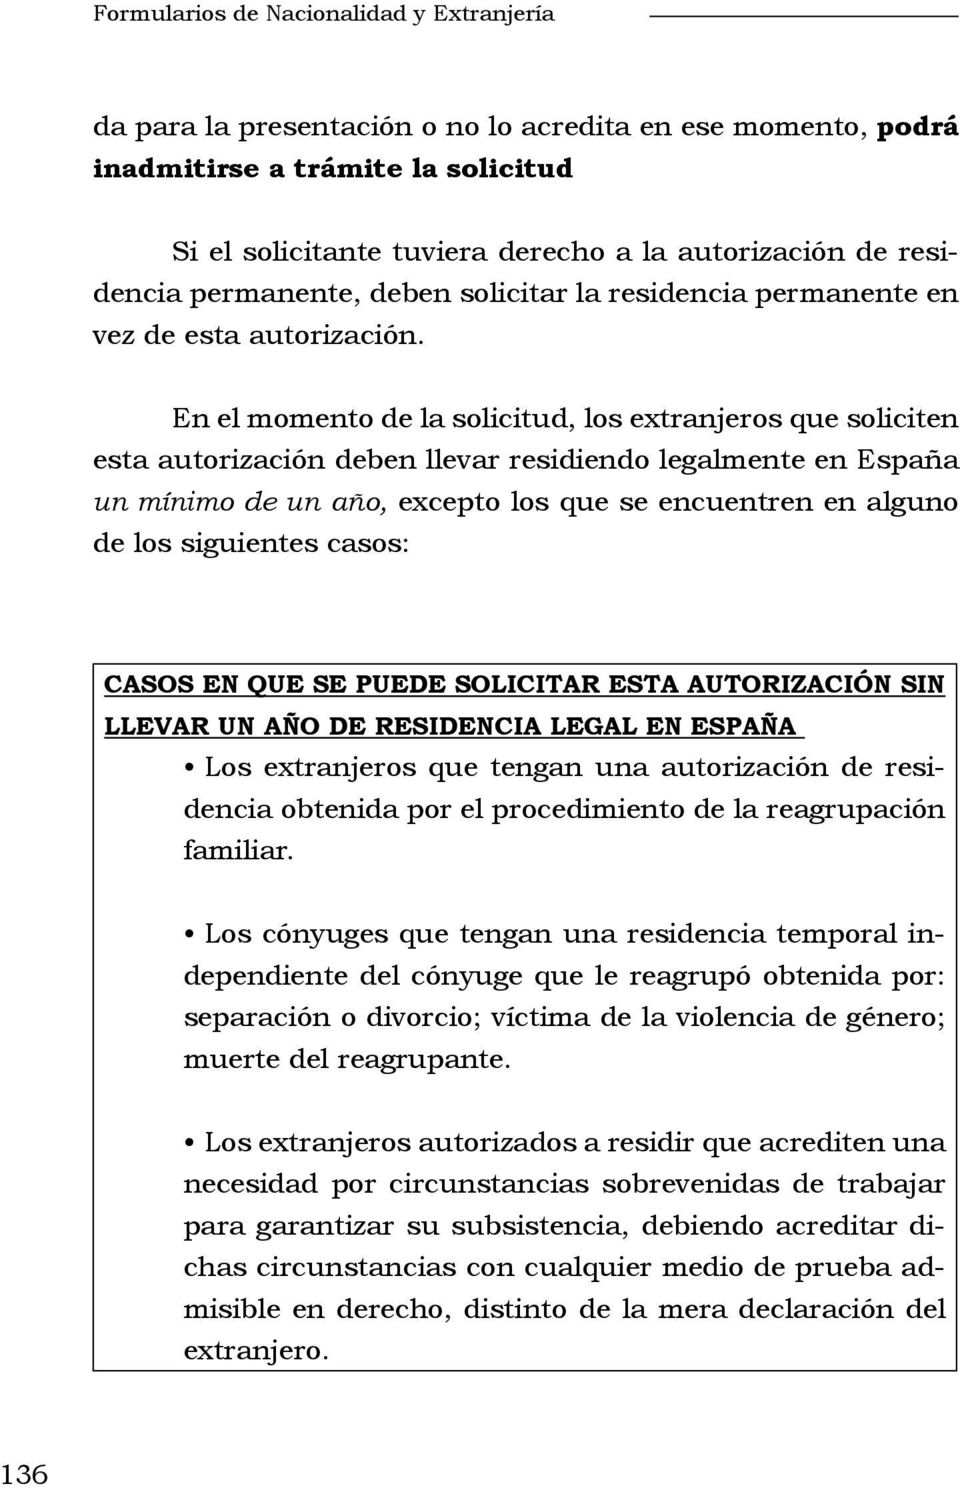 En el momento de la solicitud, los extranjeros que soliciten esta autorización deben llevar residiendo legalmente en España un mínimo de un año, excepto los que se encuentren en alguno de los